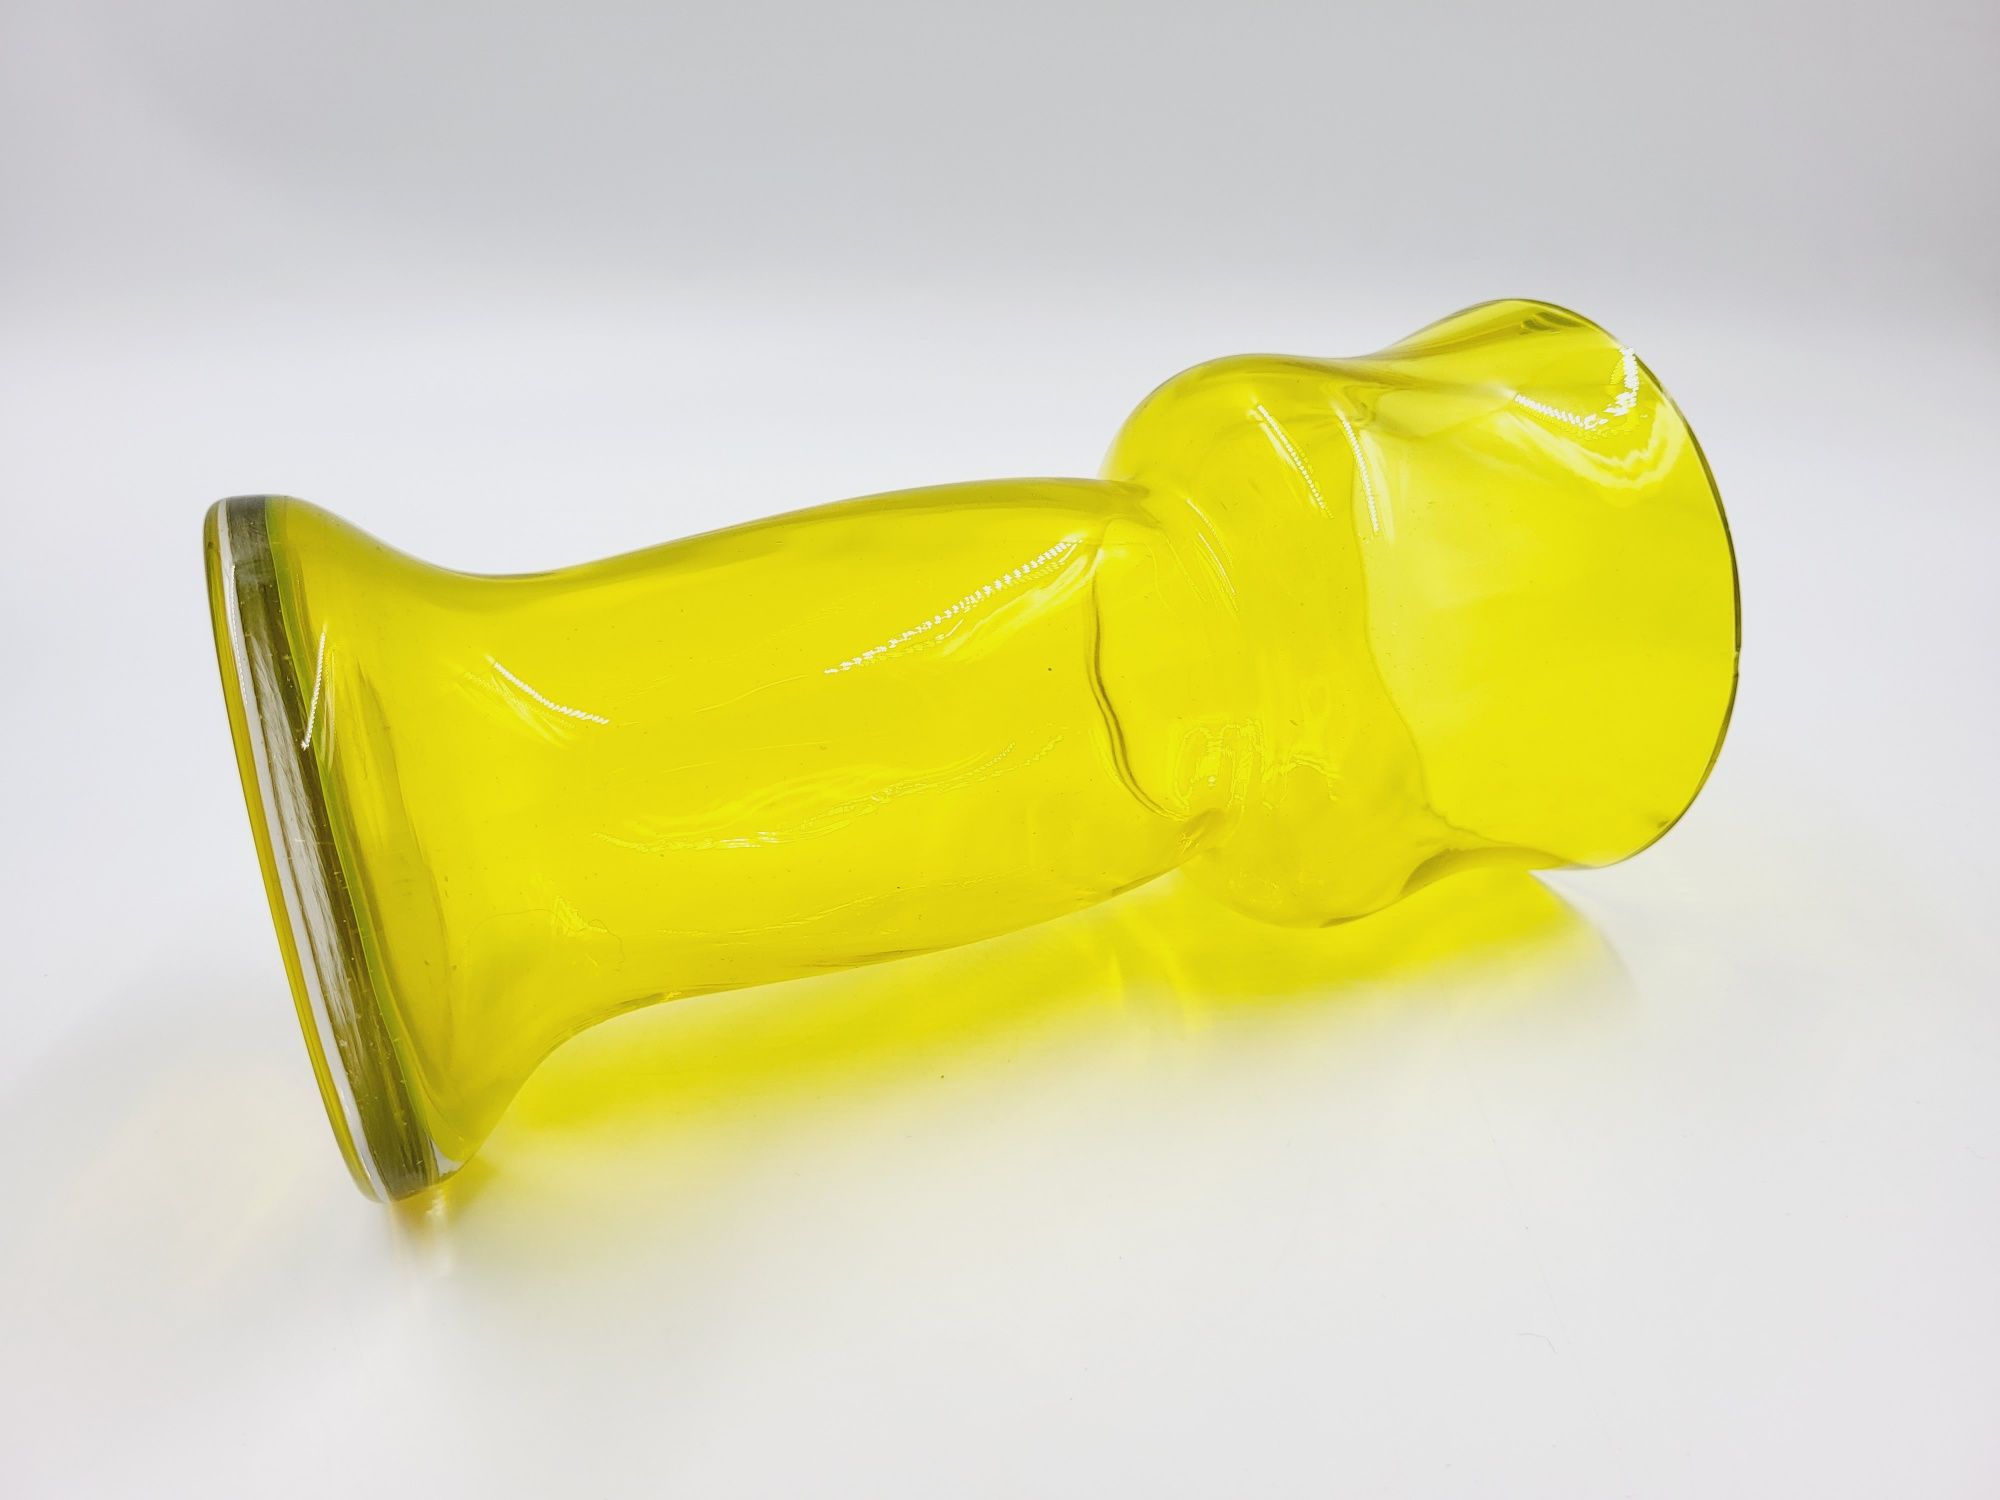 Śliczny cytrynowy żółty szklany wazon Ludwika Fiedorowicza